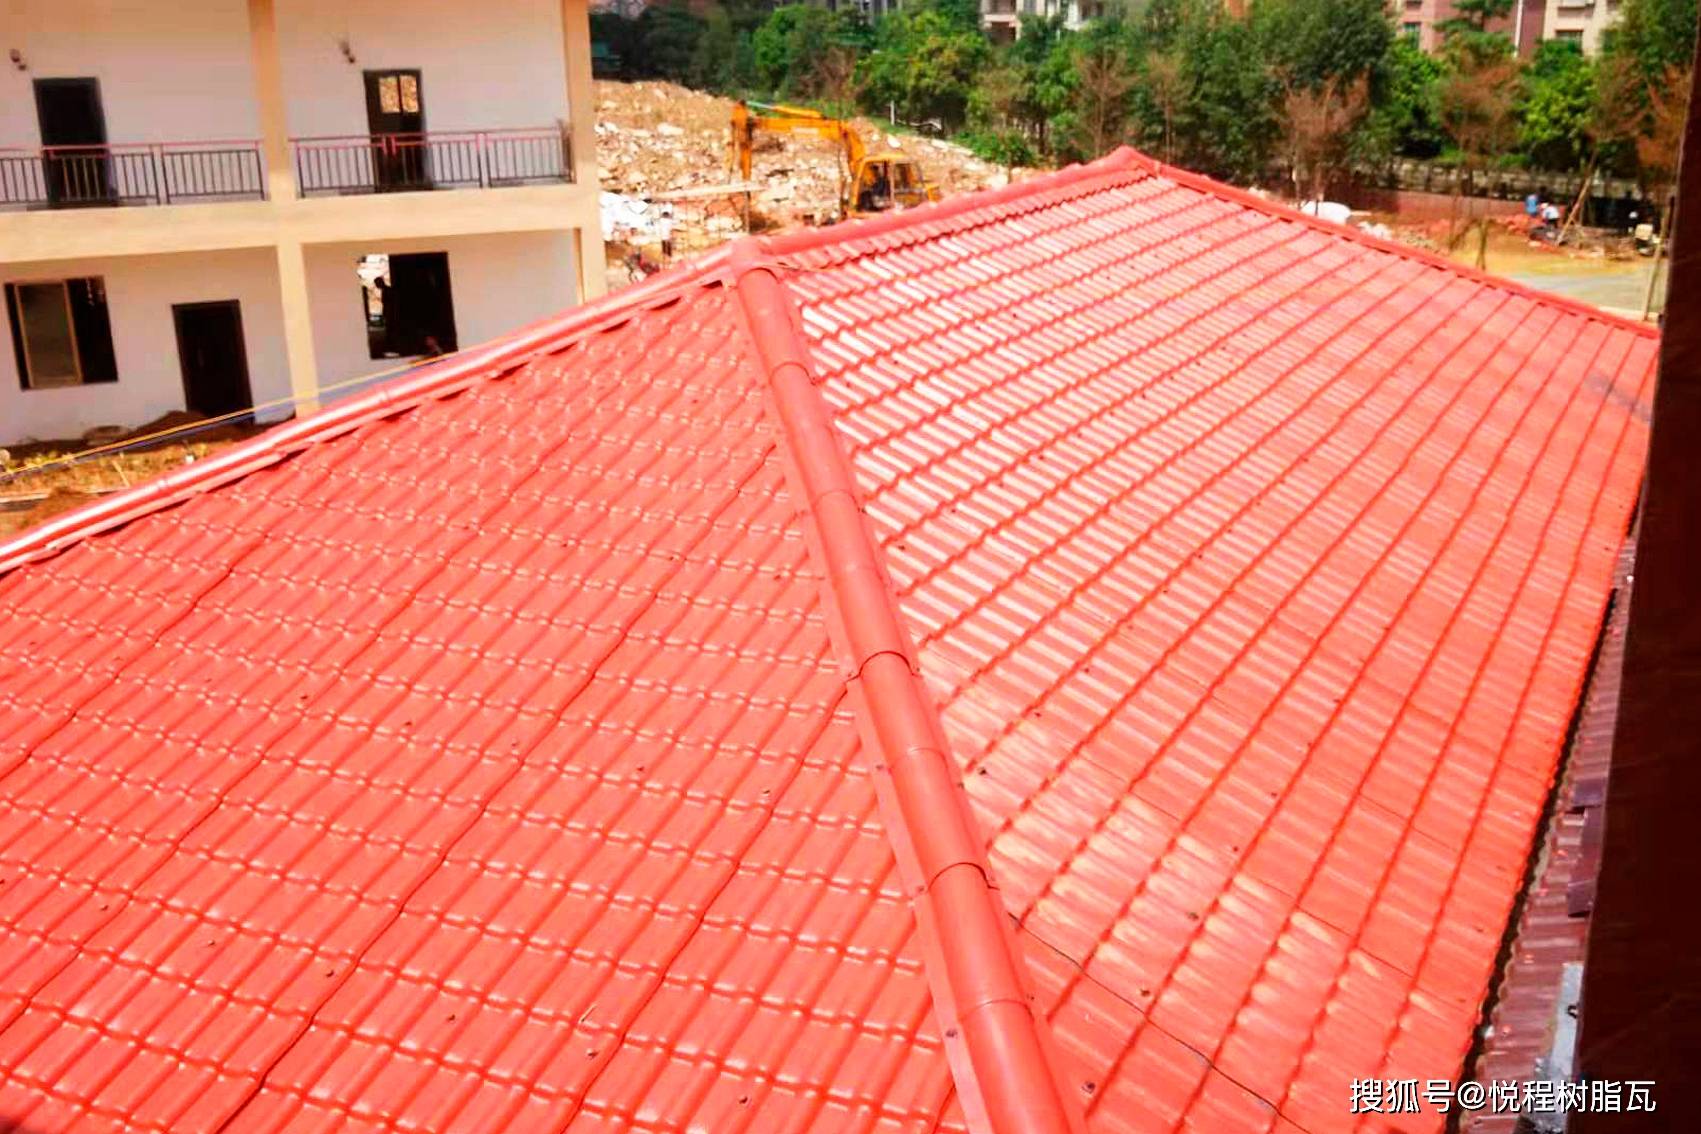 屋顶隔热,用彩钢瓦好还是树脂瓦好?